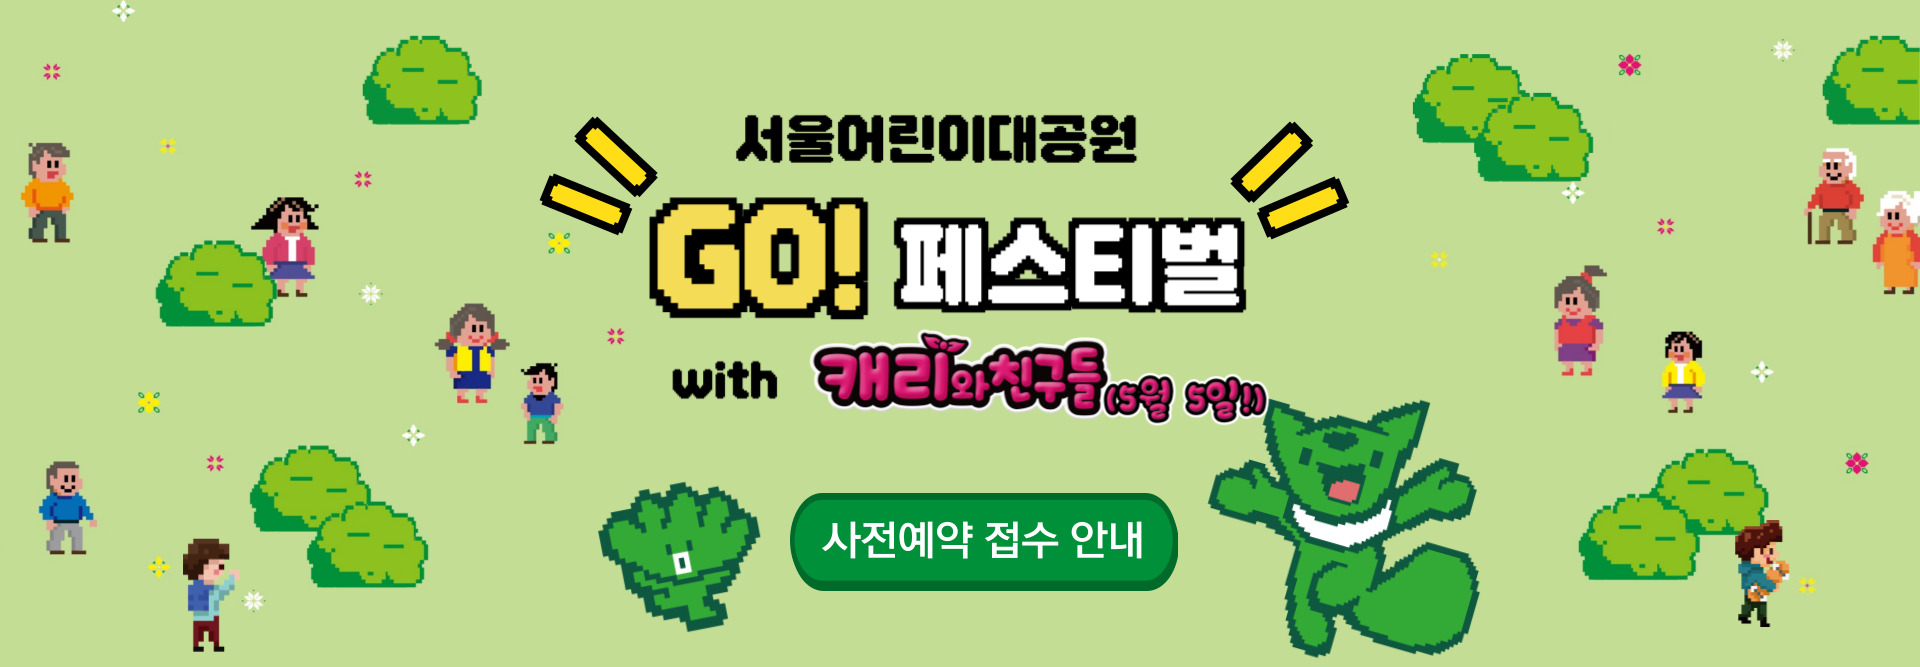 서울어린이대공원 GO 페스티벌 사전예약 접수안내